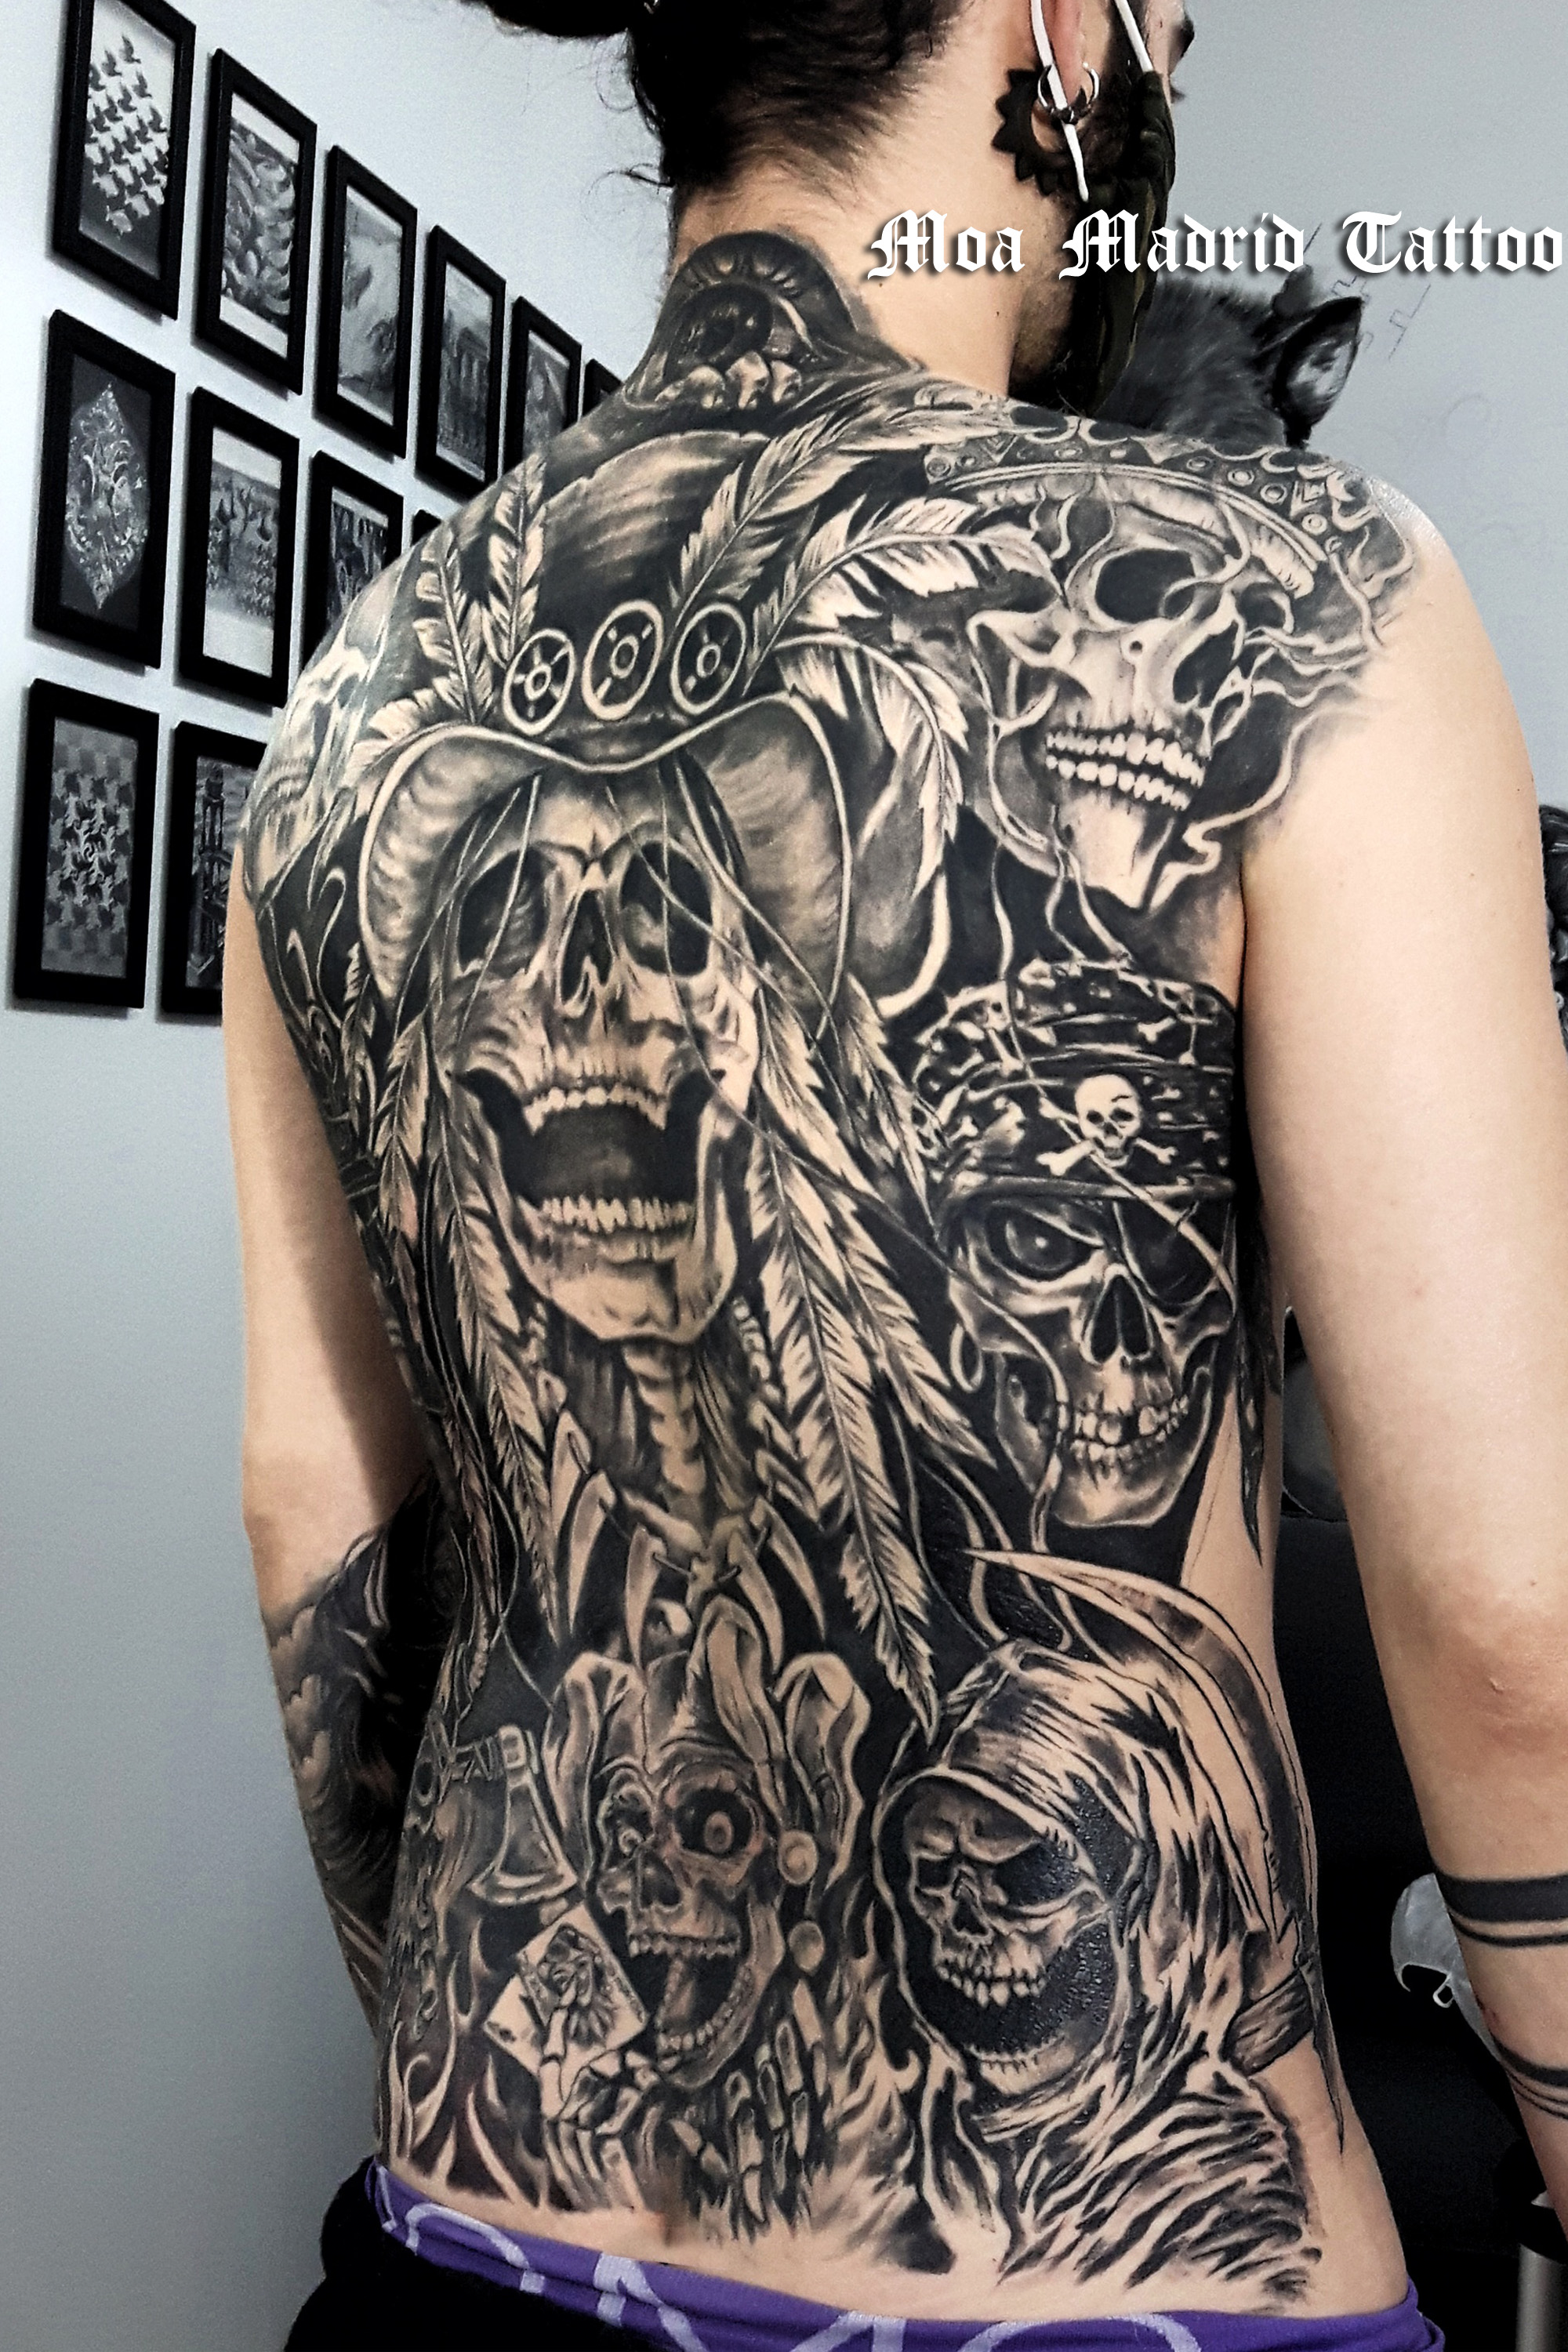 Espalda entera tatuada con calaveras